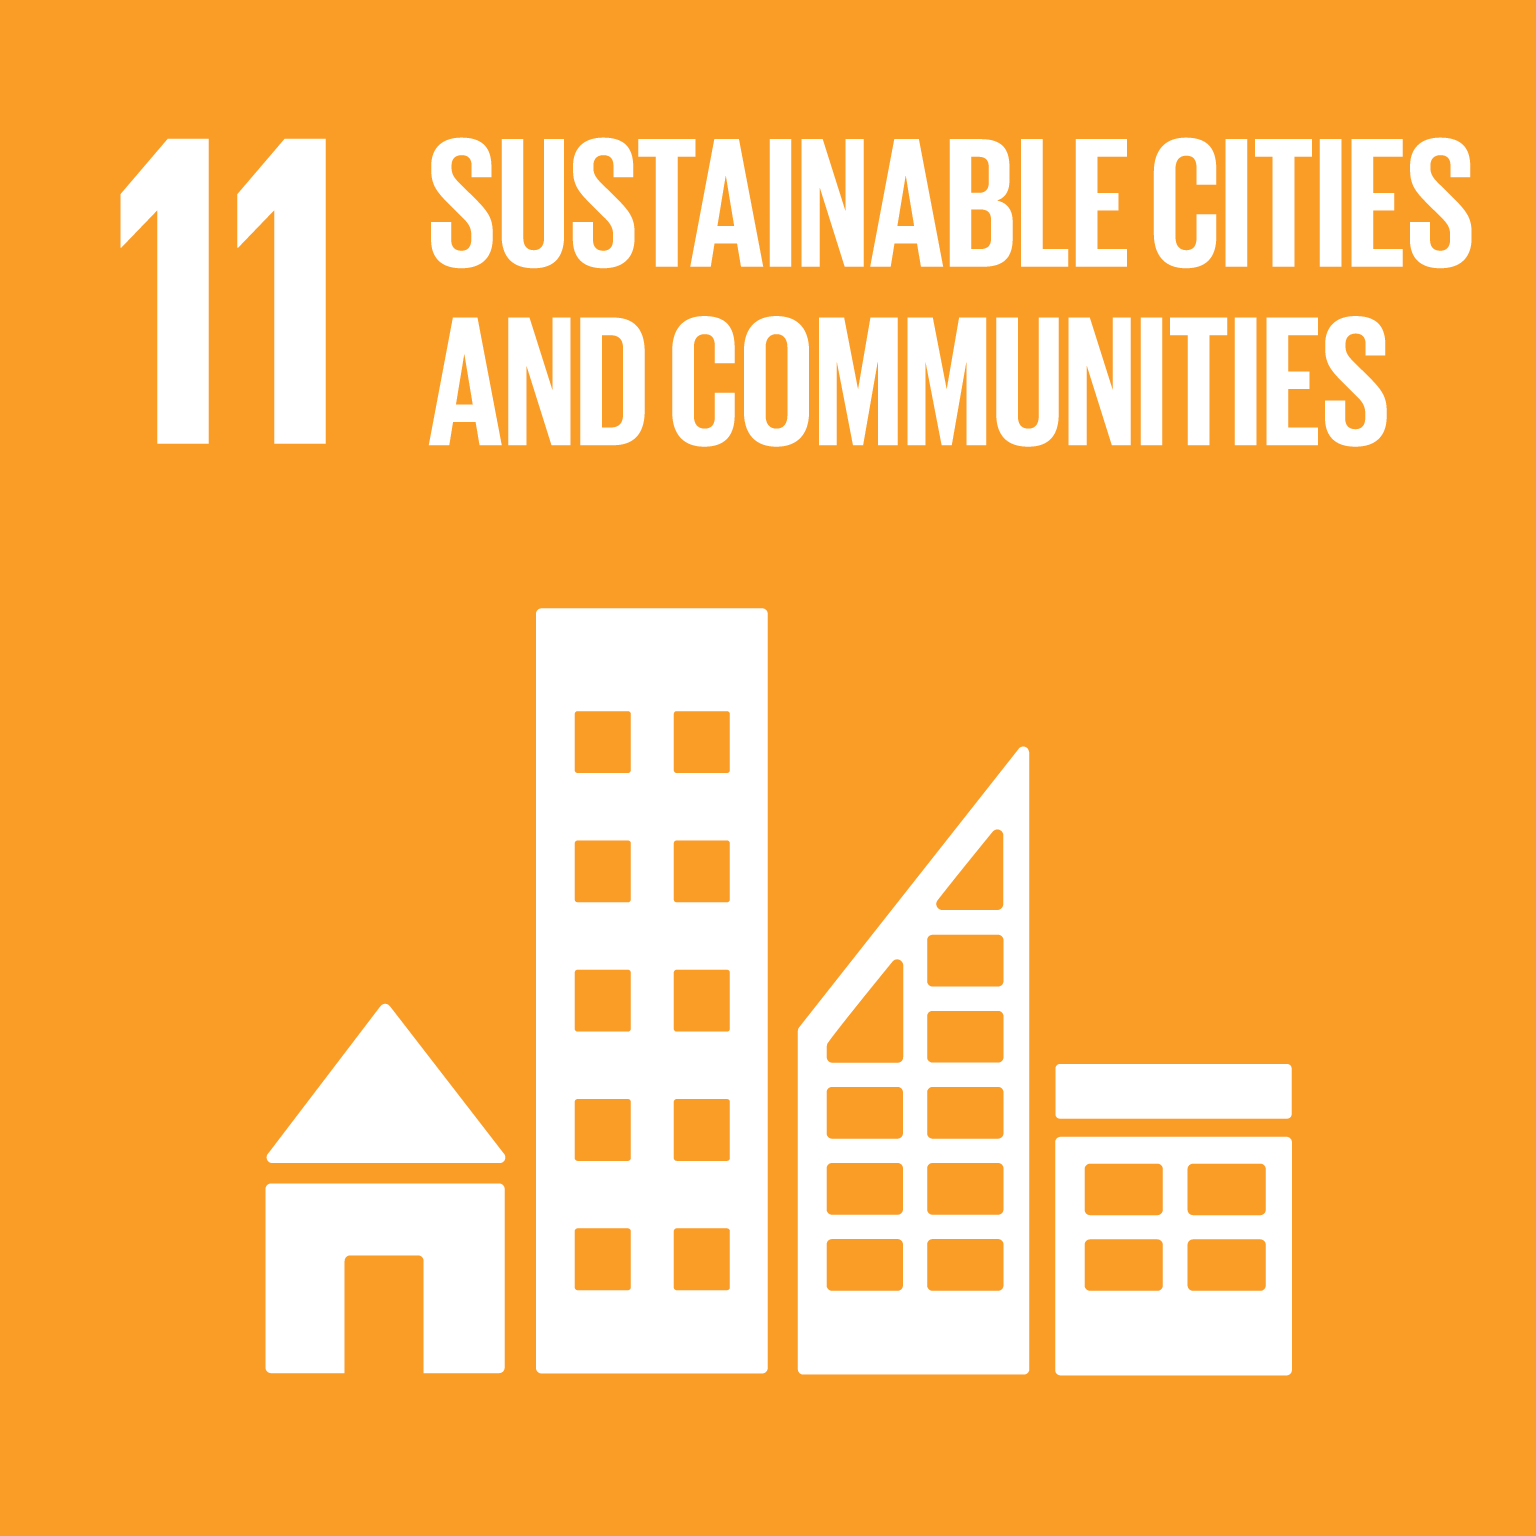 Verdensmål 11: Bæredygtige byer og lokalsamfund